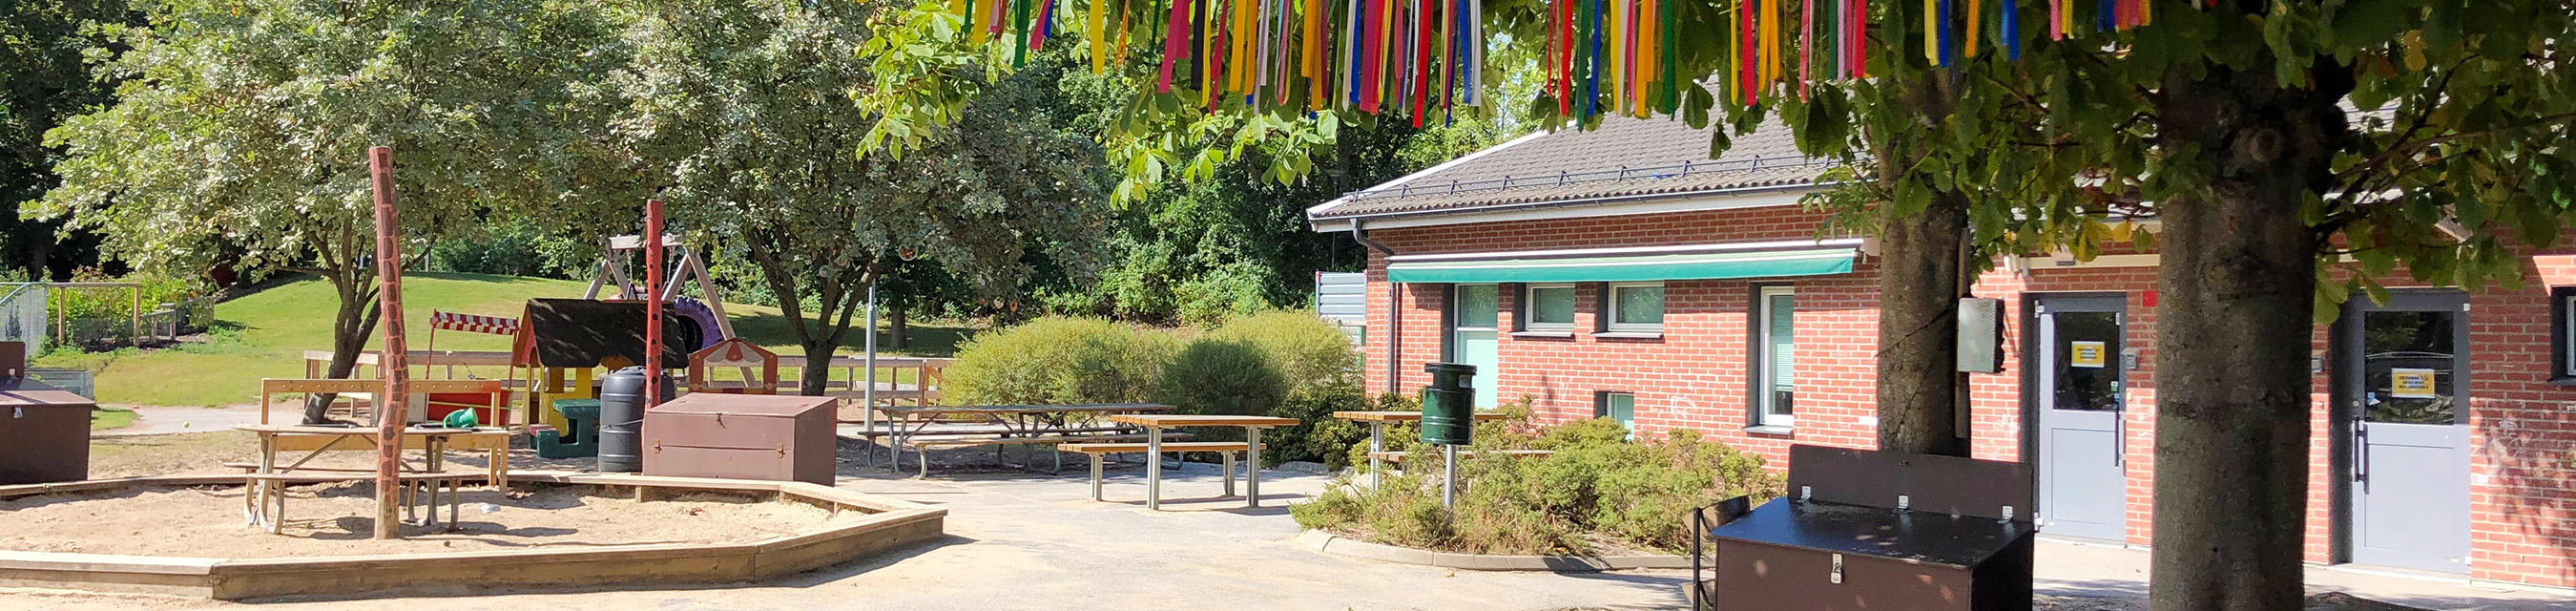 Sommarbäckens förskola är en enplansförskola byggd i vinkel.